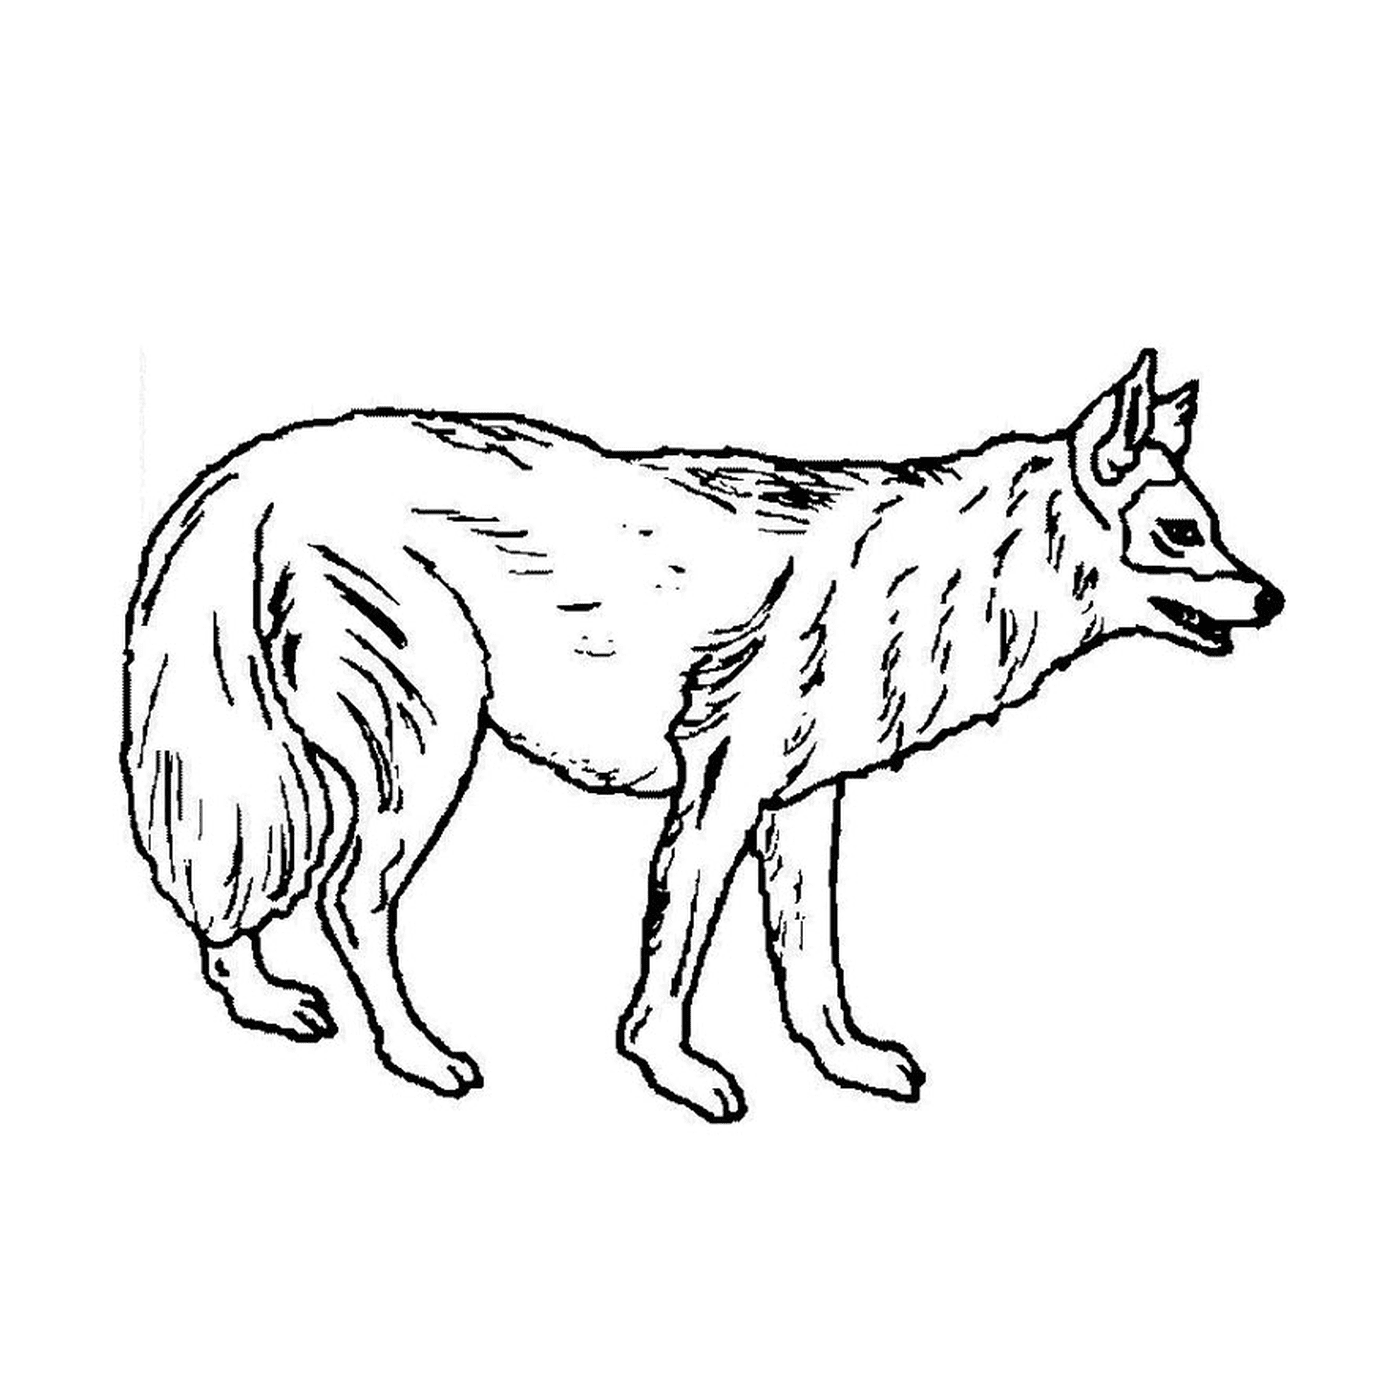   Un chien-loup debout sur ses quatre pattes 